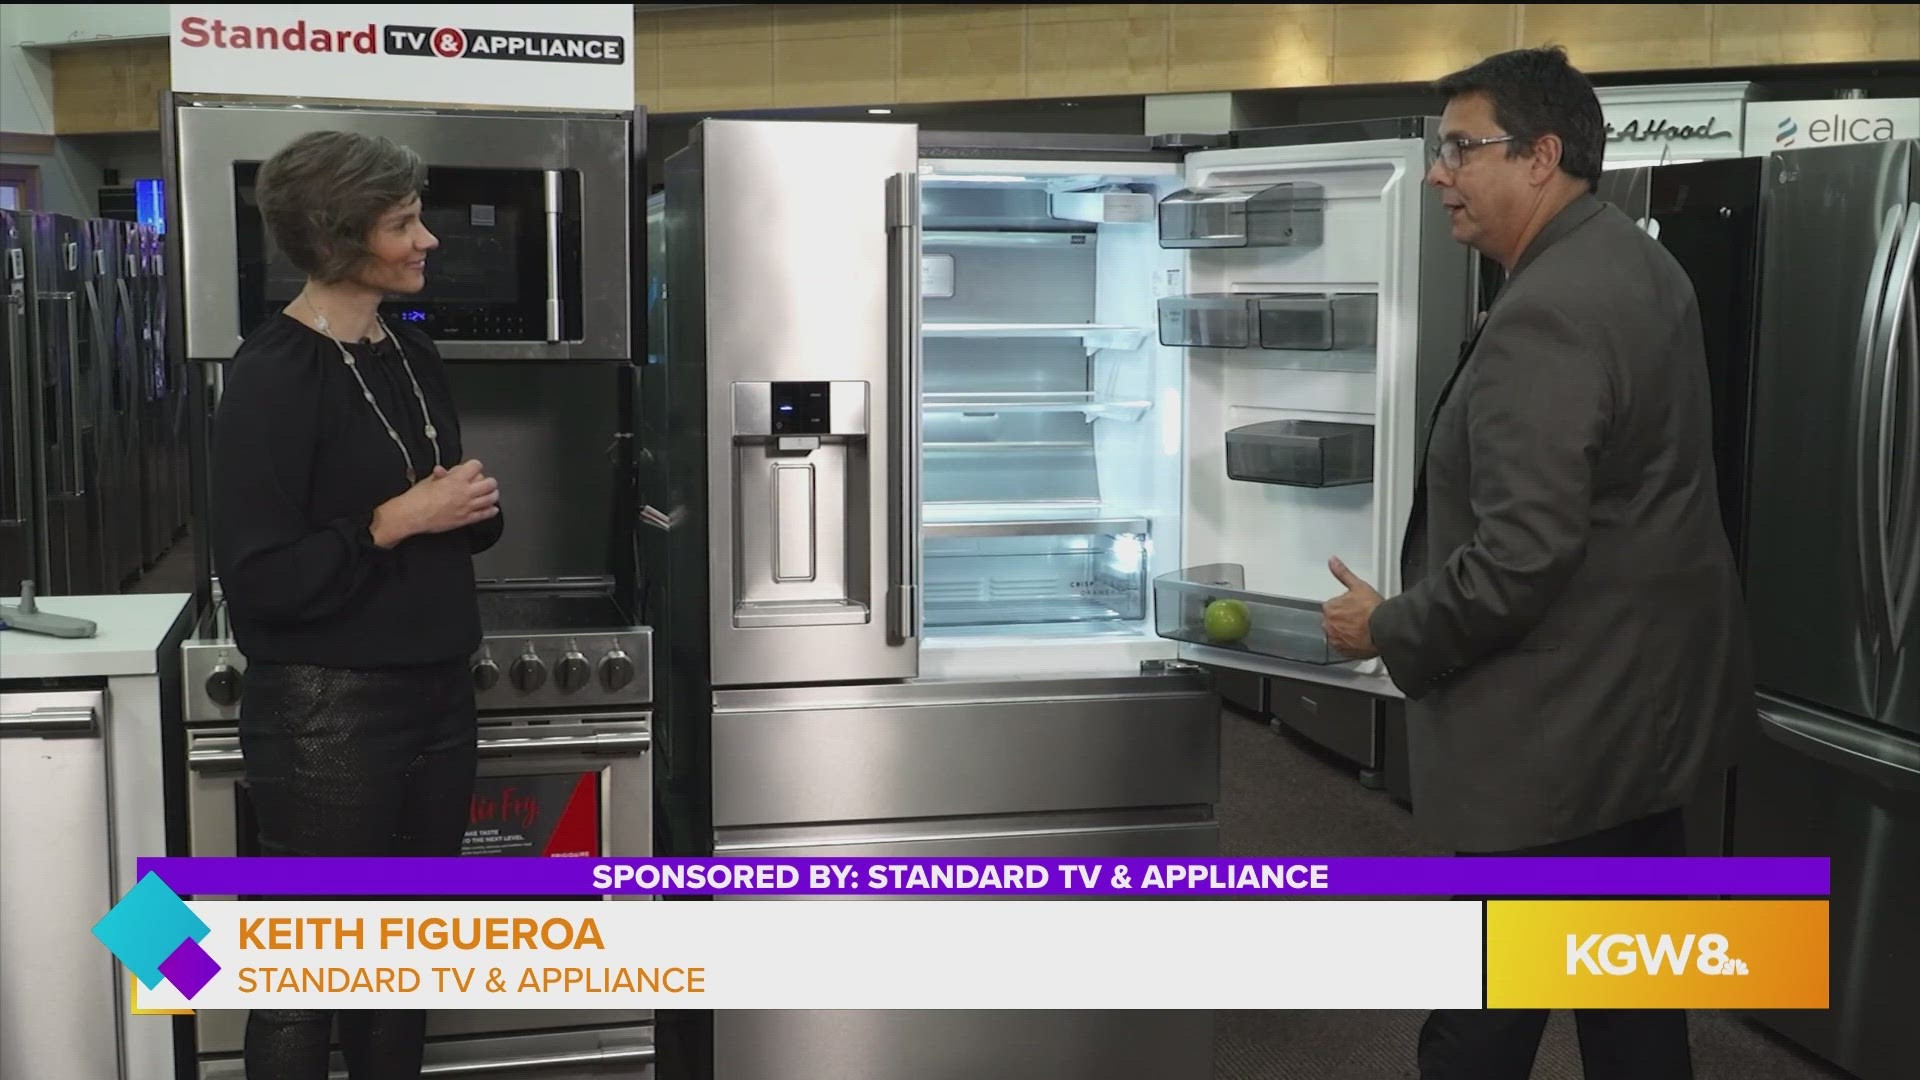 Appliances Standard TV & Appliance